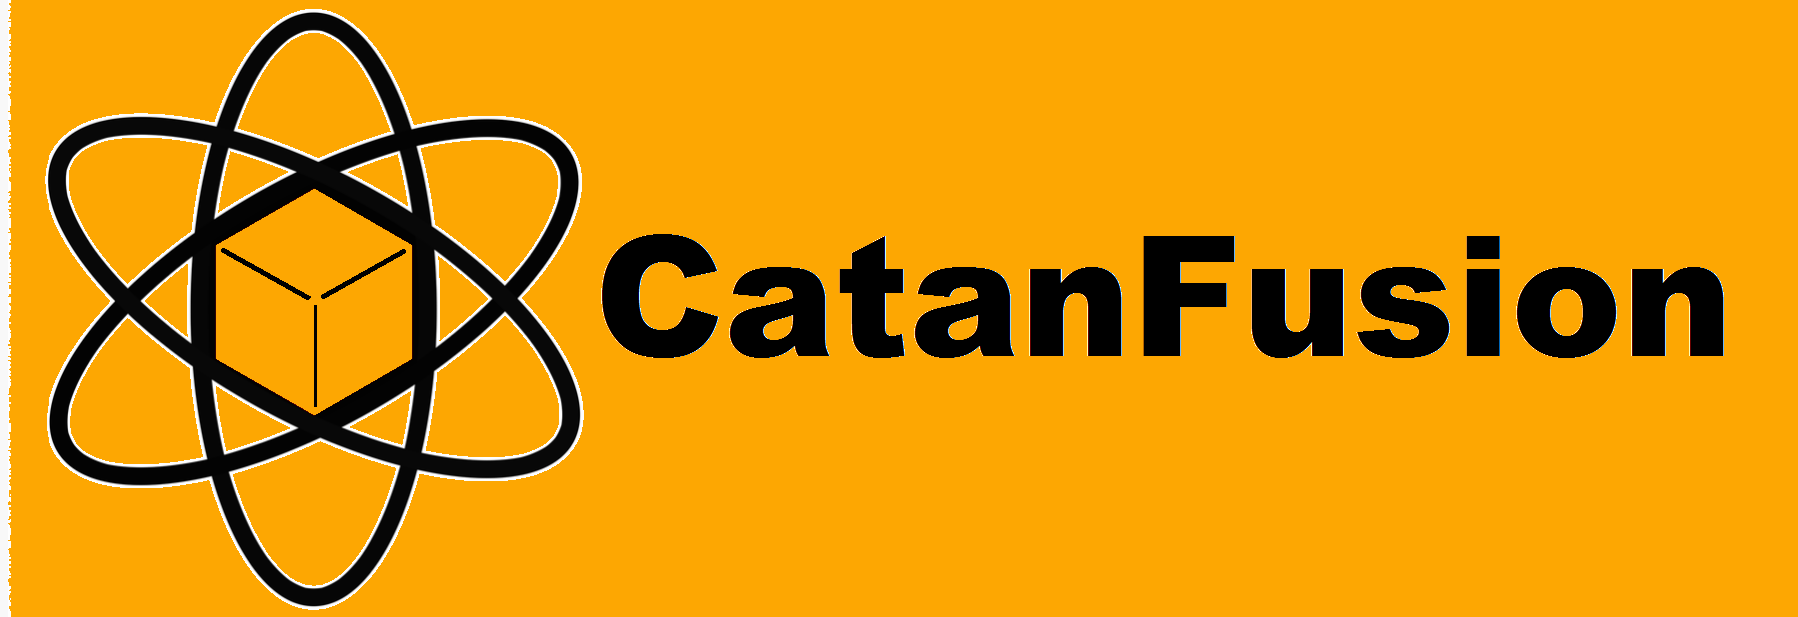 Catan Logo - Blog